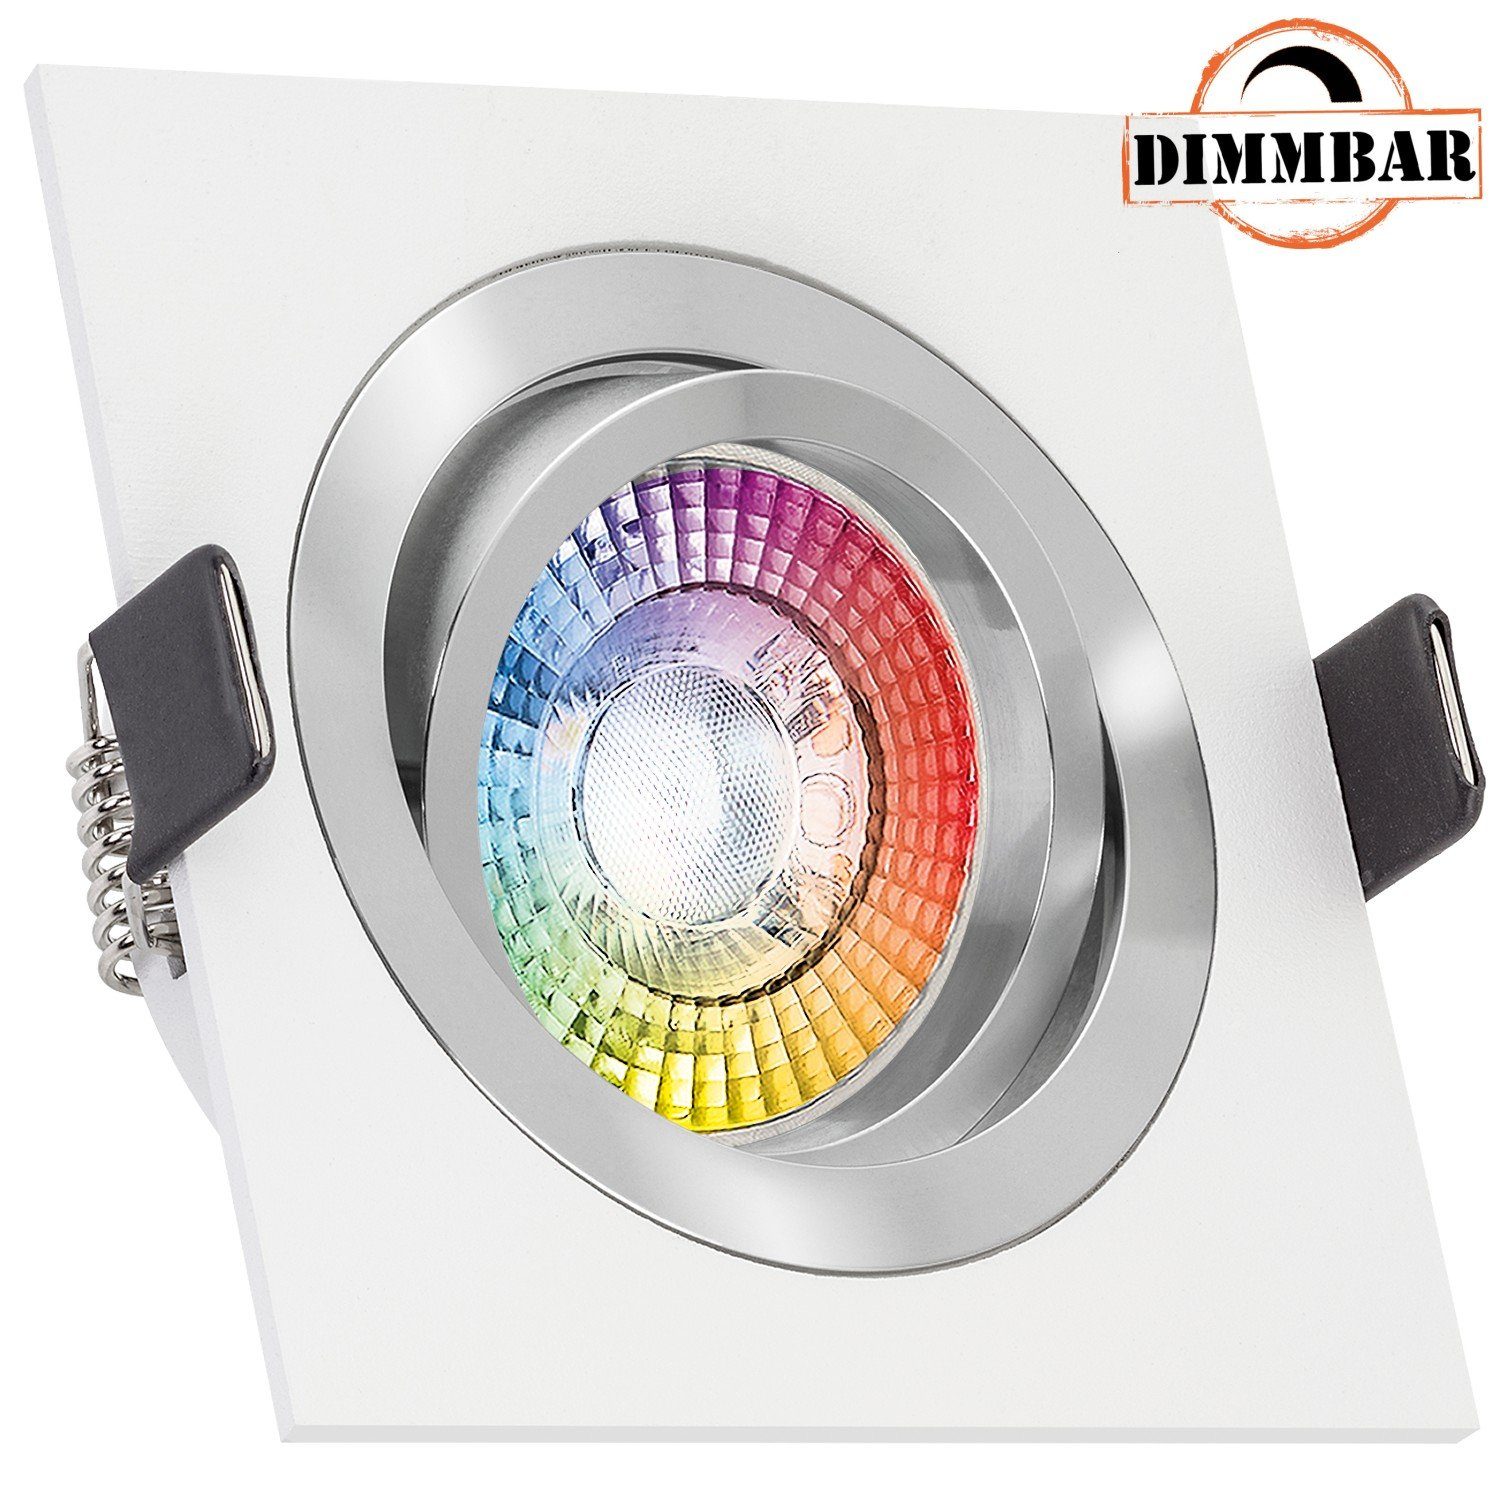 LEDANDO LED Einbaustrahler extra RGB LED Set flach Einbaustrahler weiß mit LEDANDO LED von in 3W